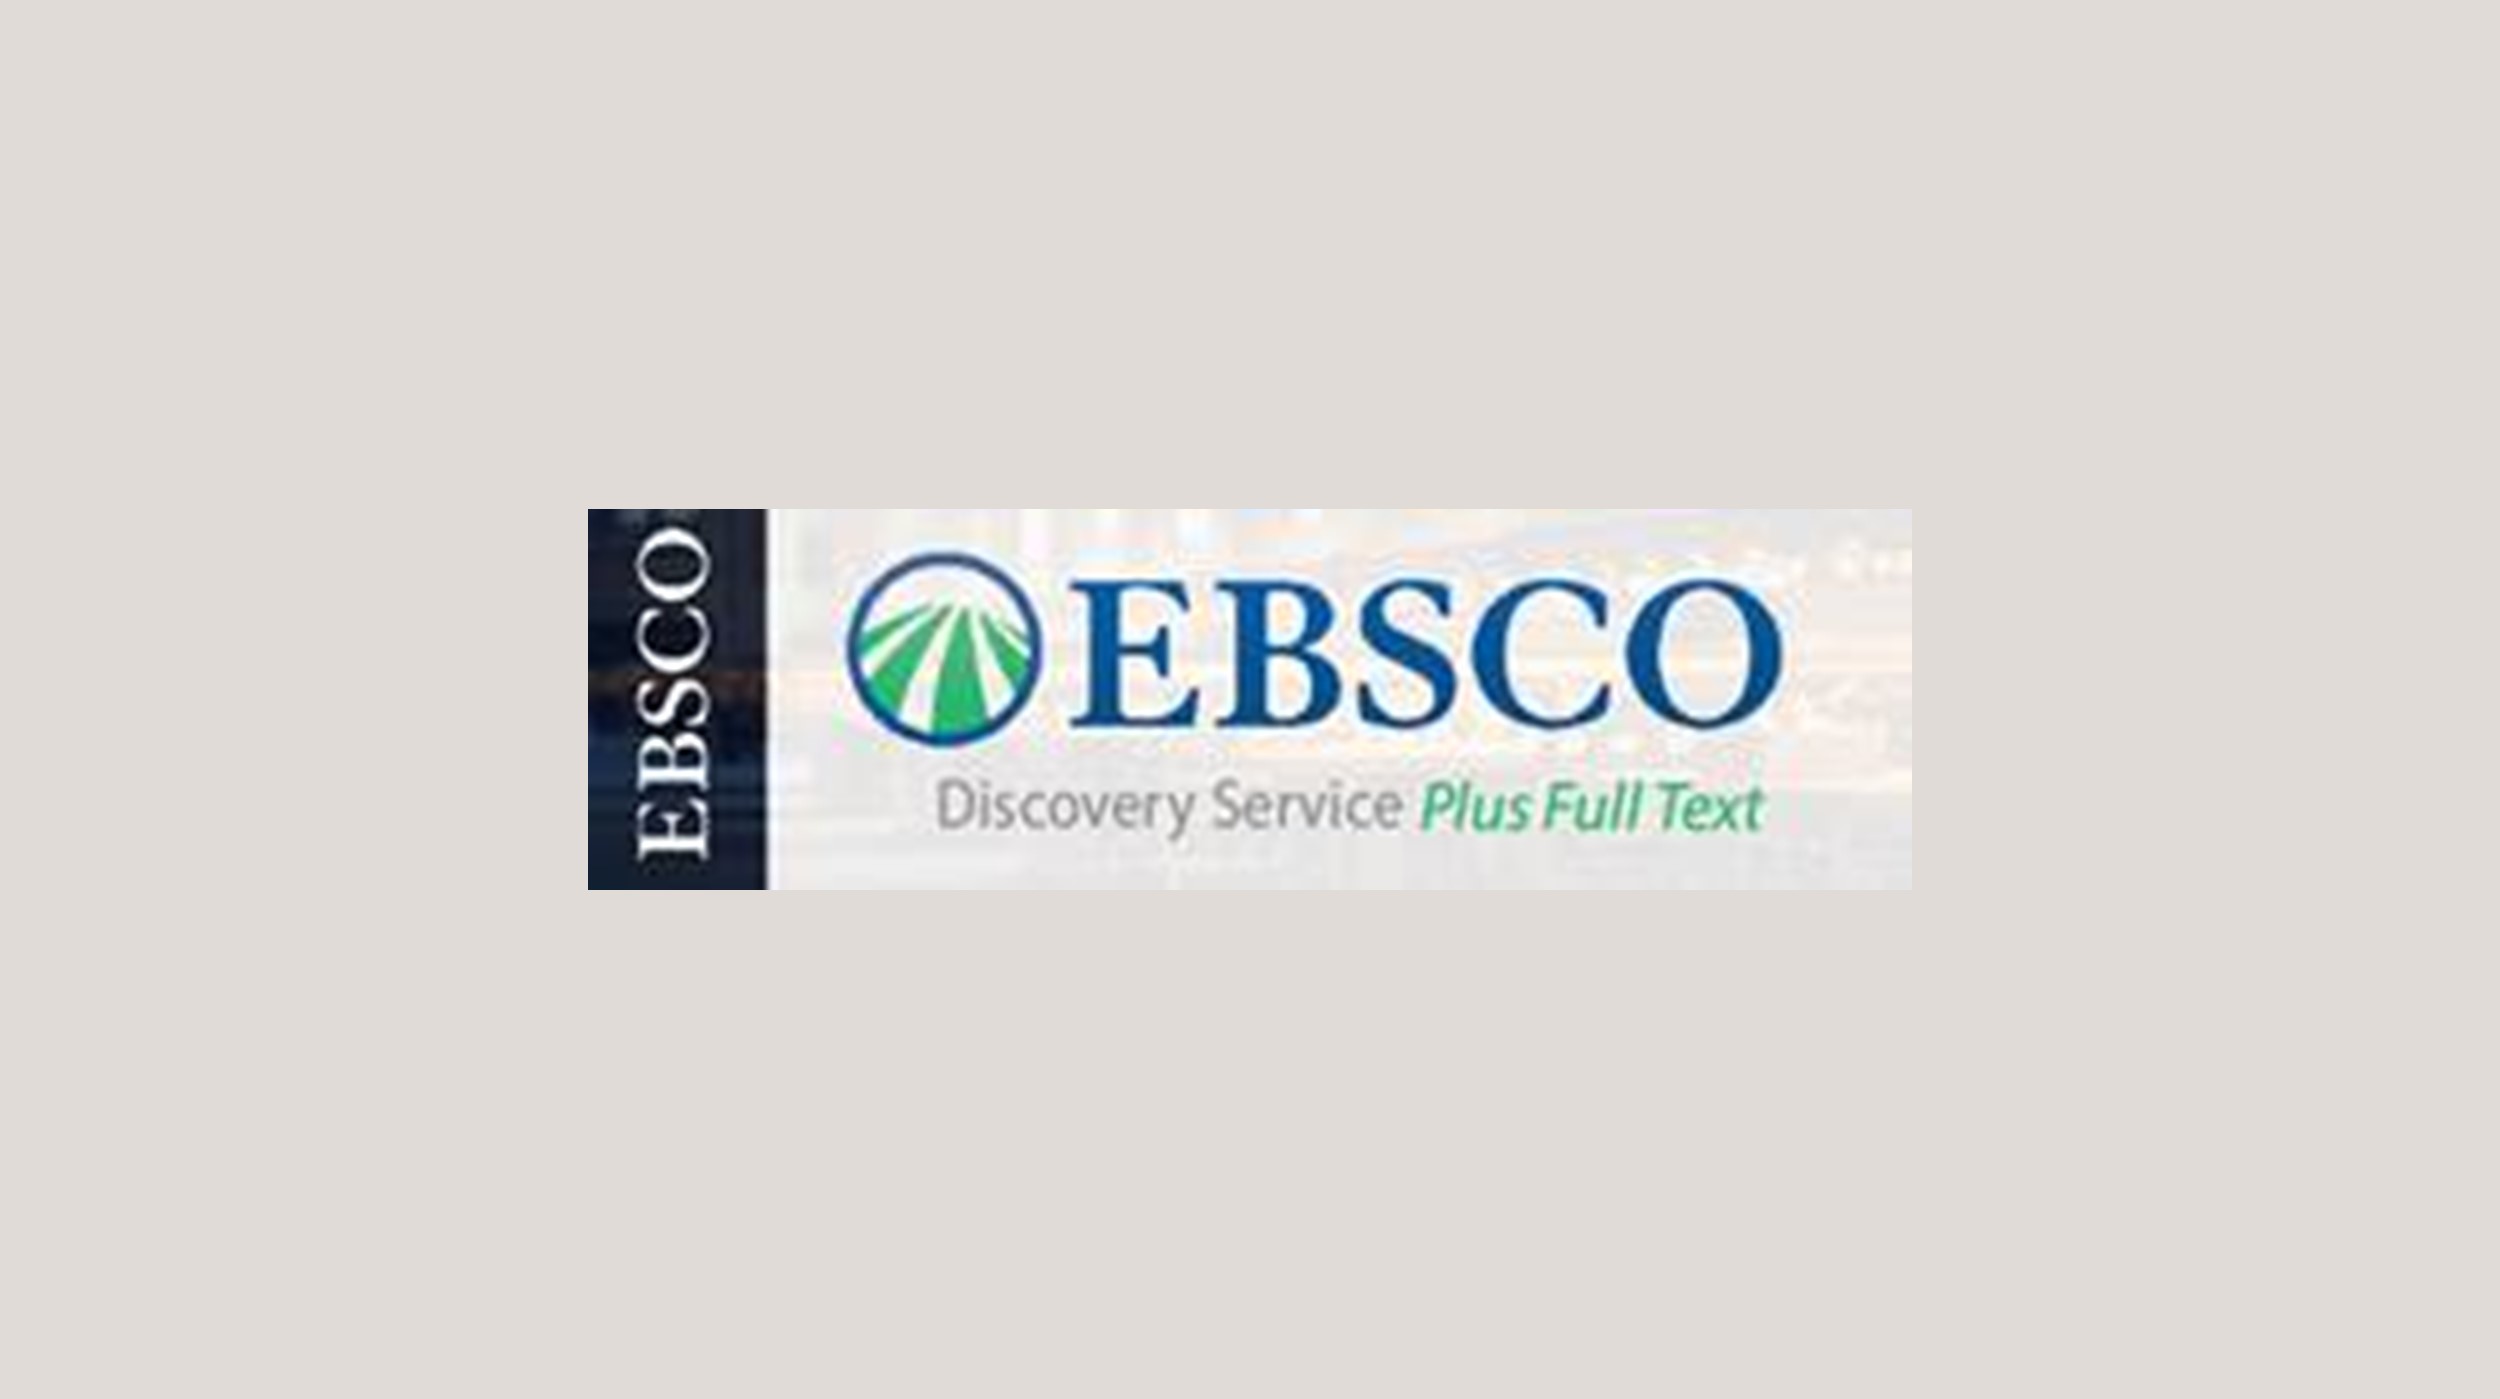 EBSCO2022